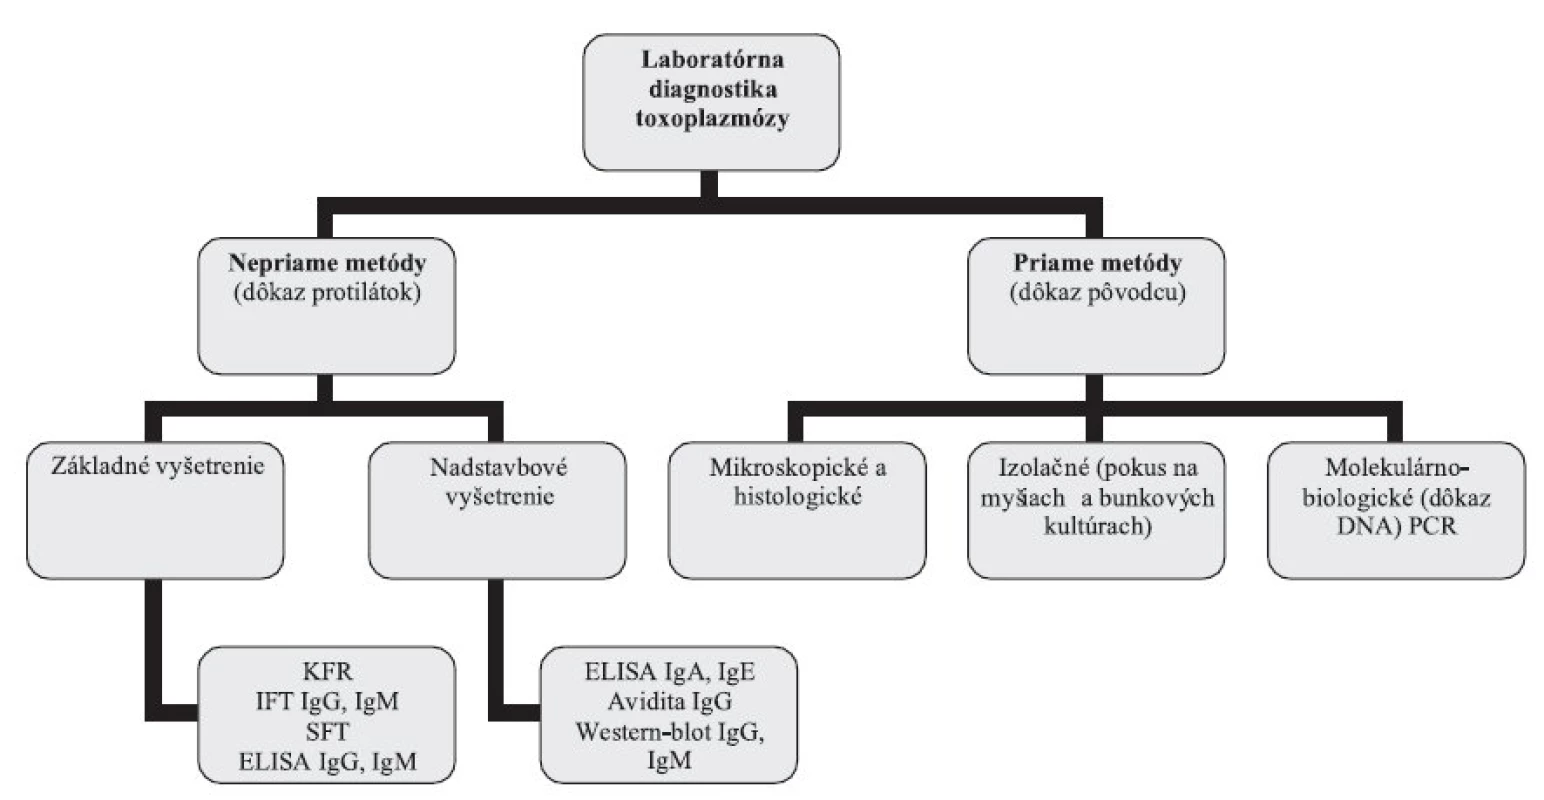 Laboratórna diagnostika toxoplazmózy – schéma vyšetrovacích postupov
Fig. 1. Laboratory diagnosis of toxoplasmosis – scheme of test procedures